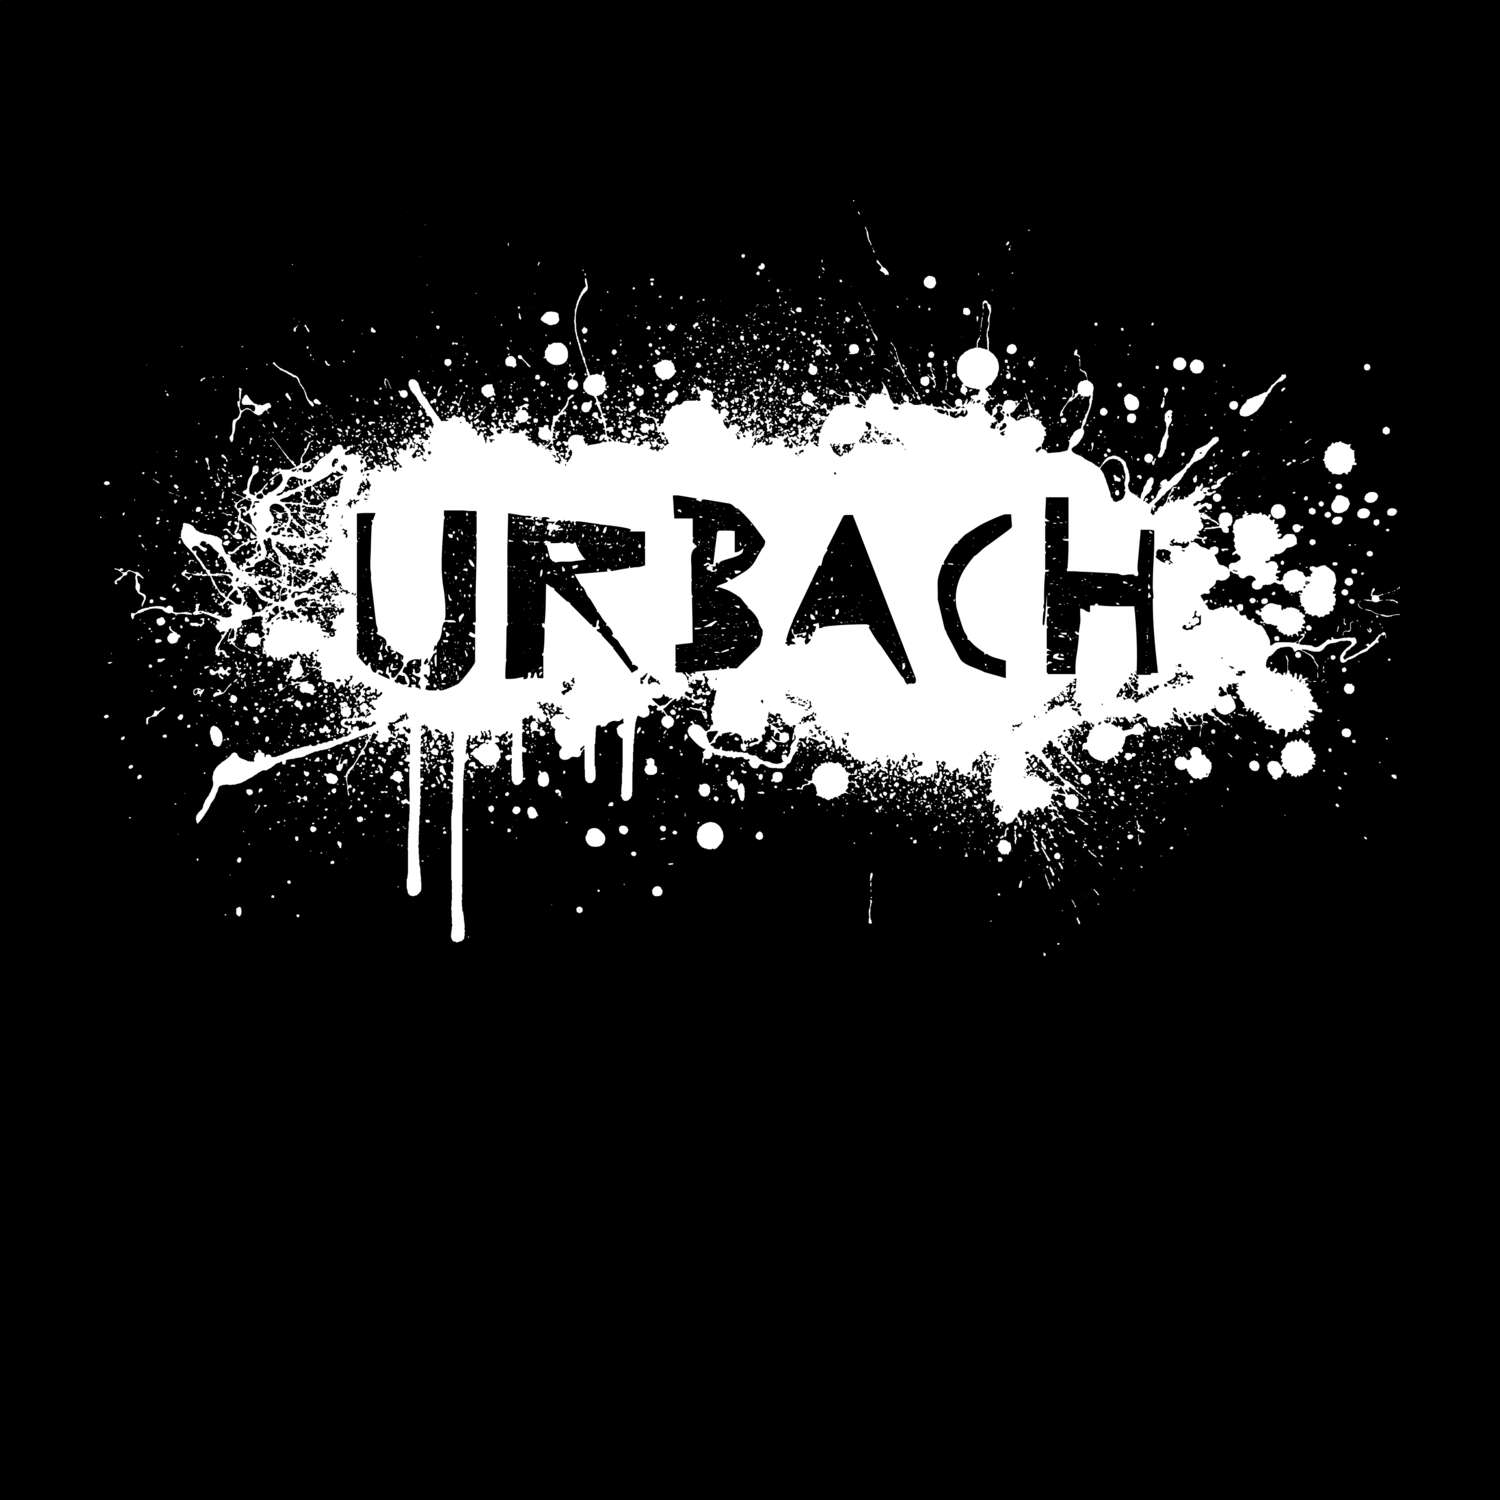 Urbach T-Shirt »Paint Splash Punk«